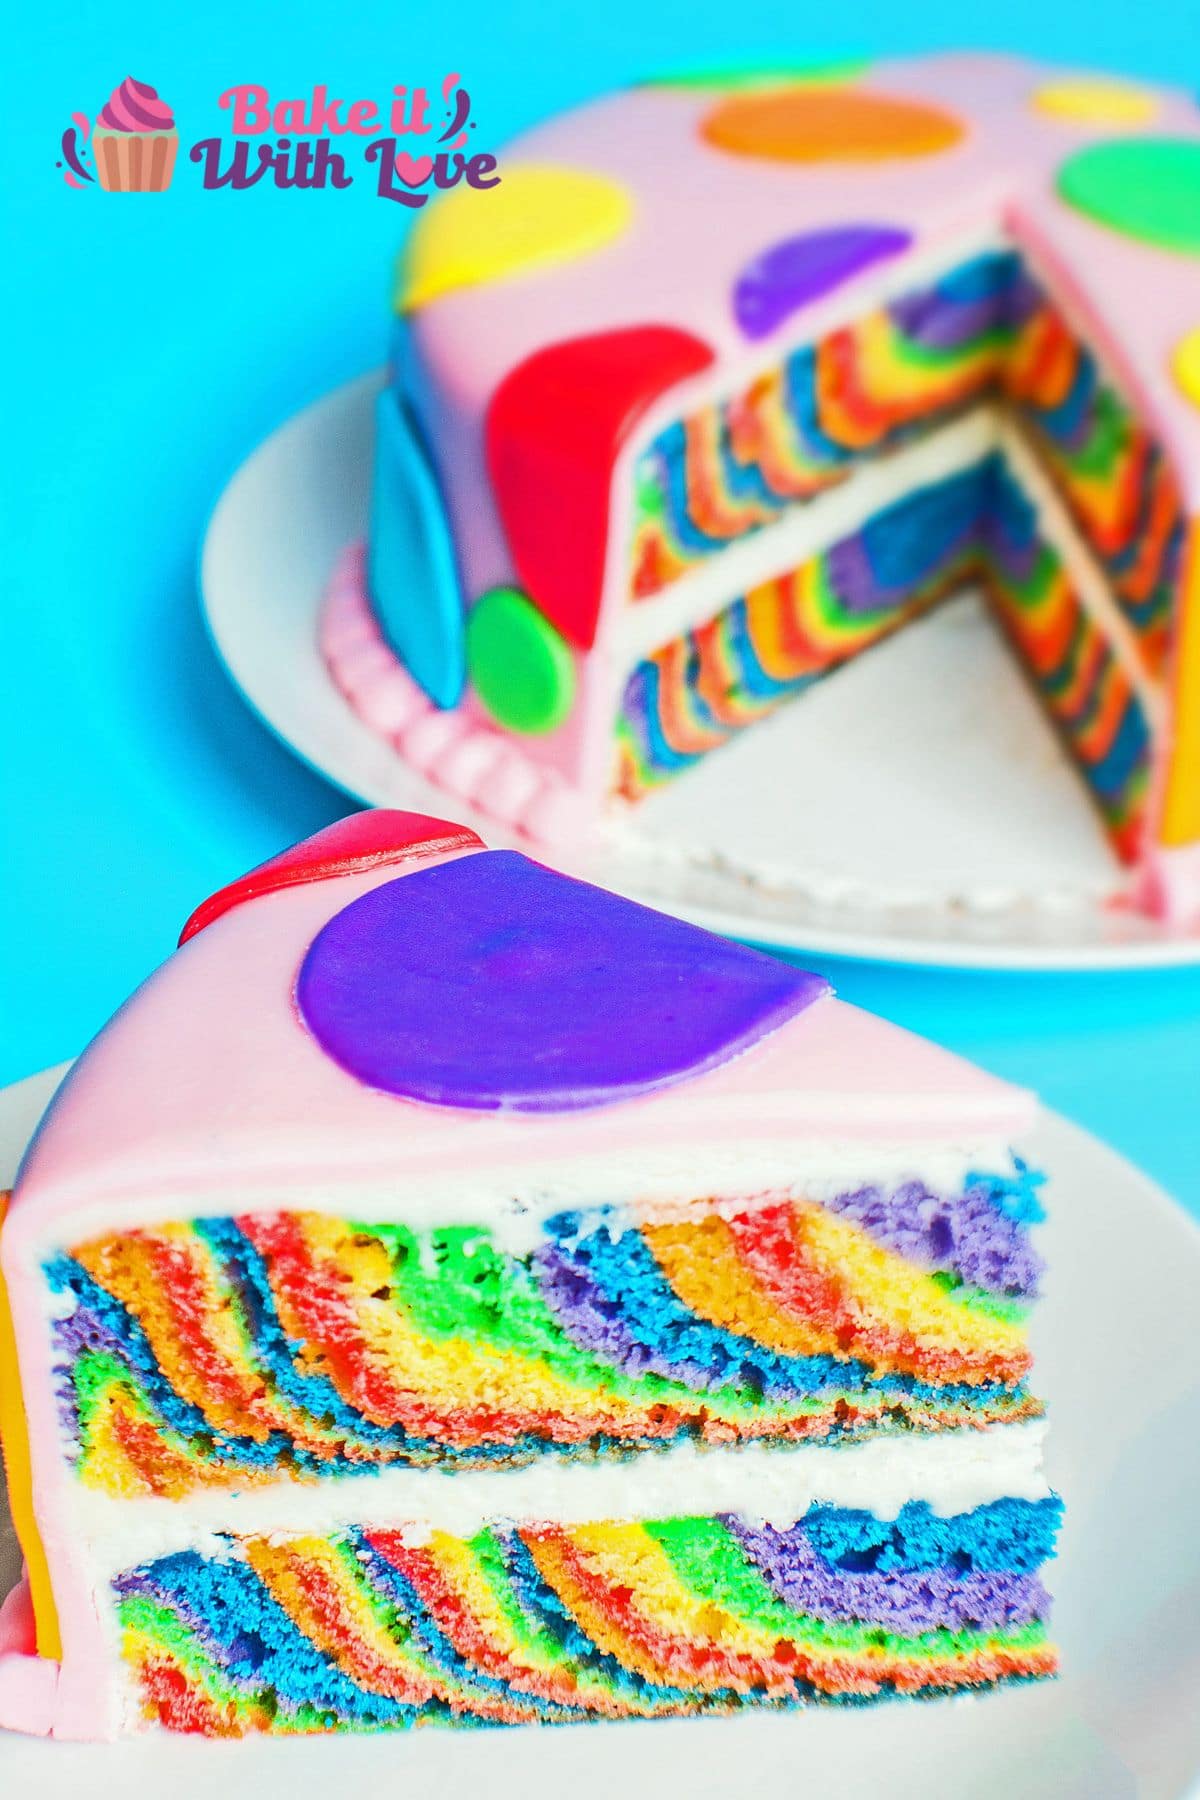 Imagen vertical de un pastel de capas de arco iris en rodajas con relleno de crema de mantequilla y una capa de fondant.